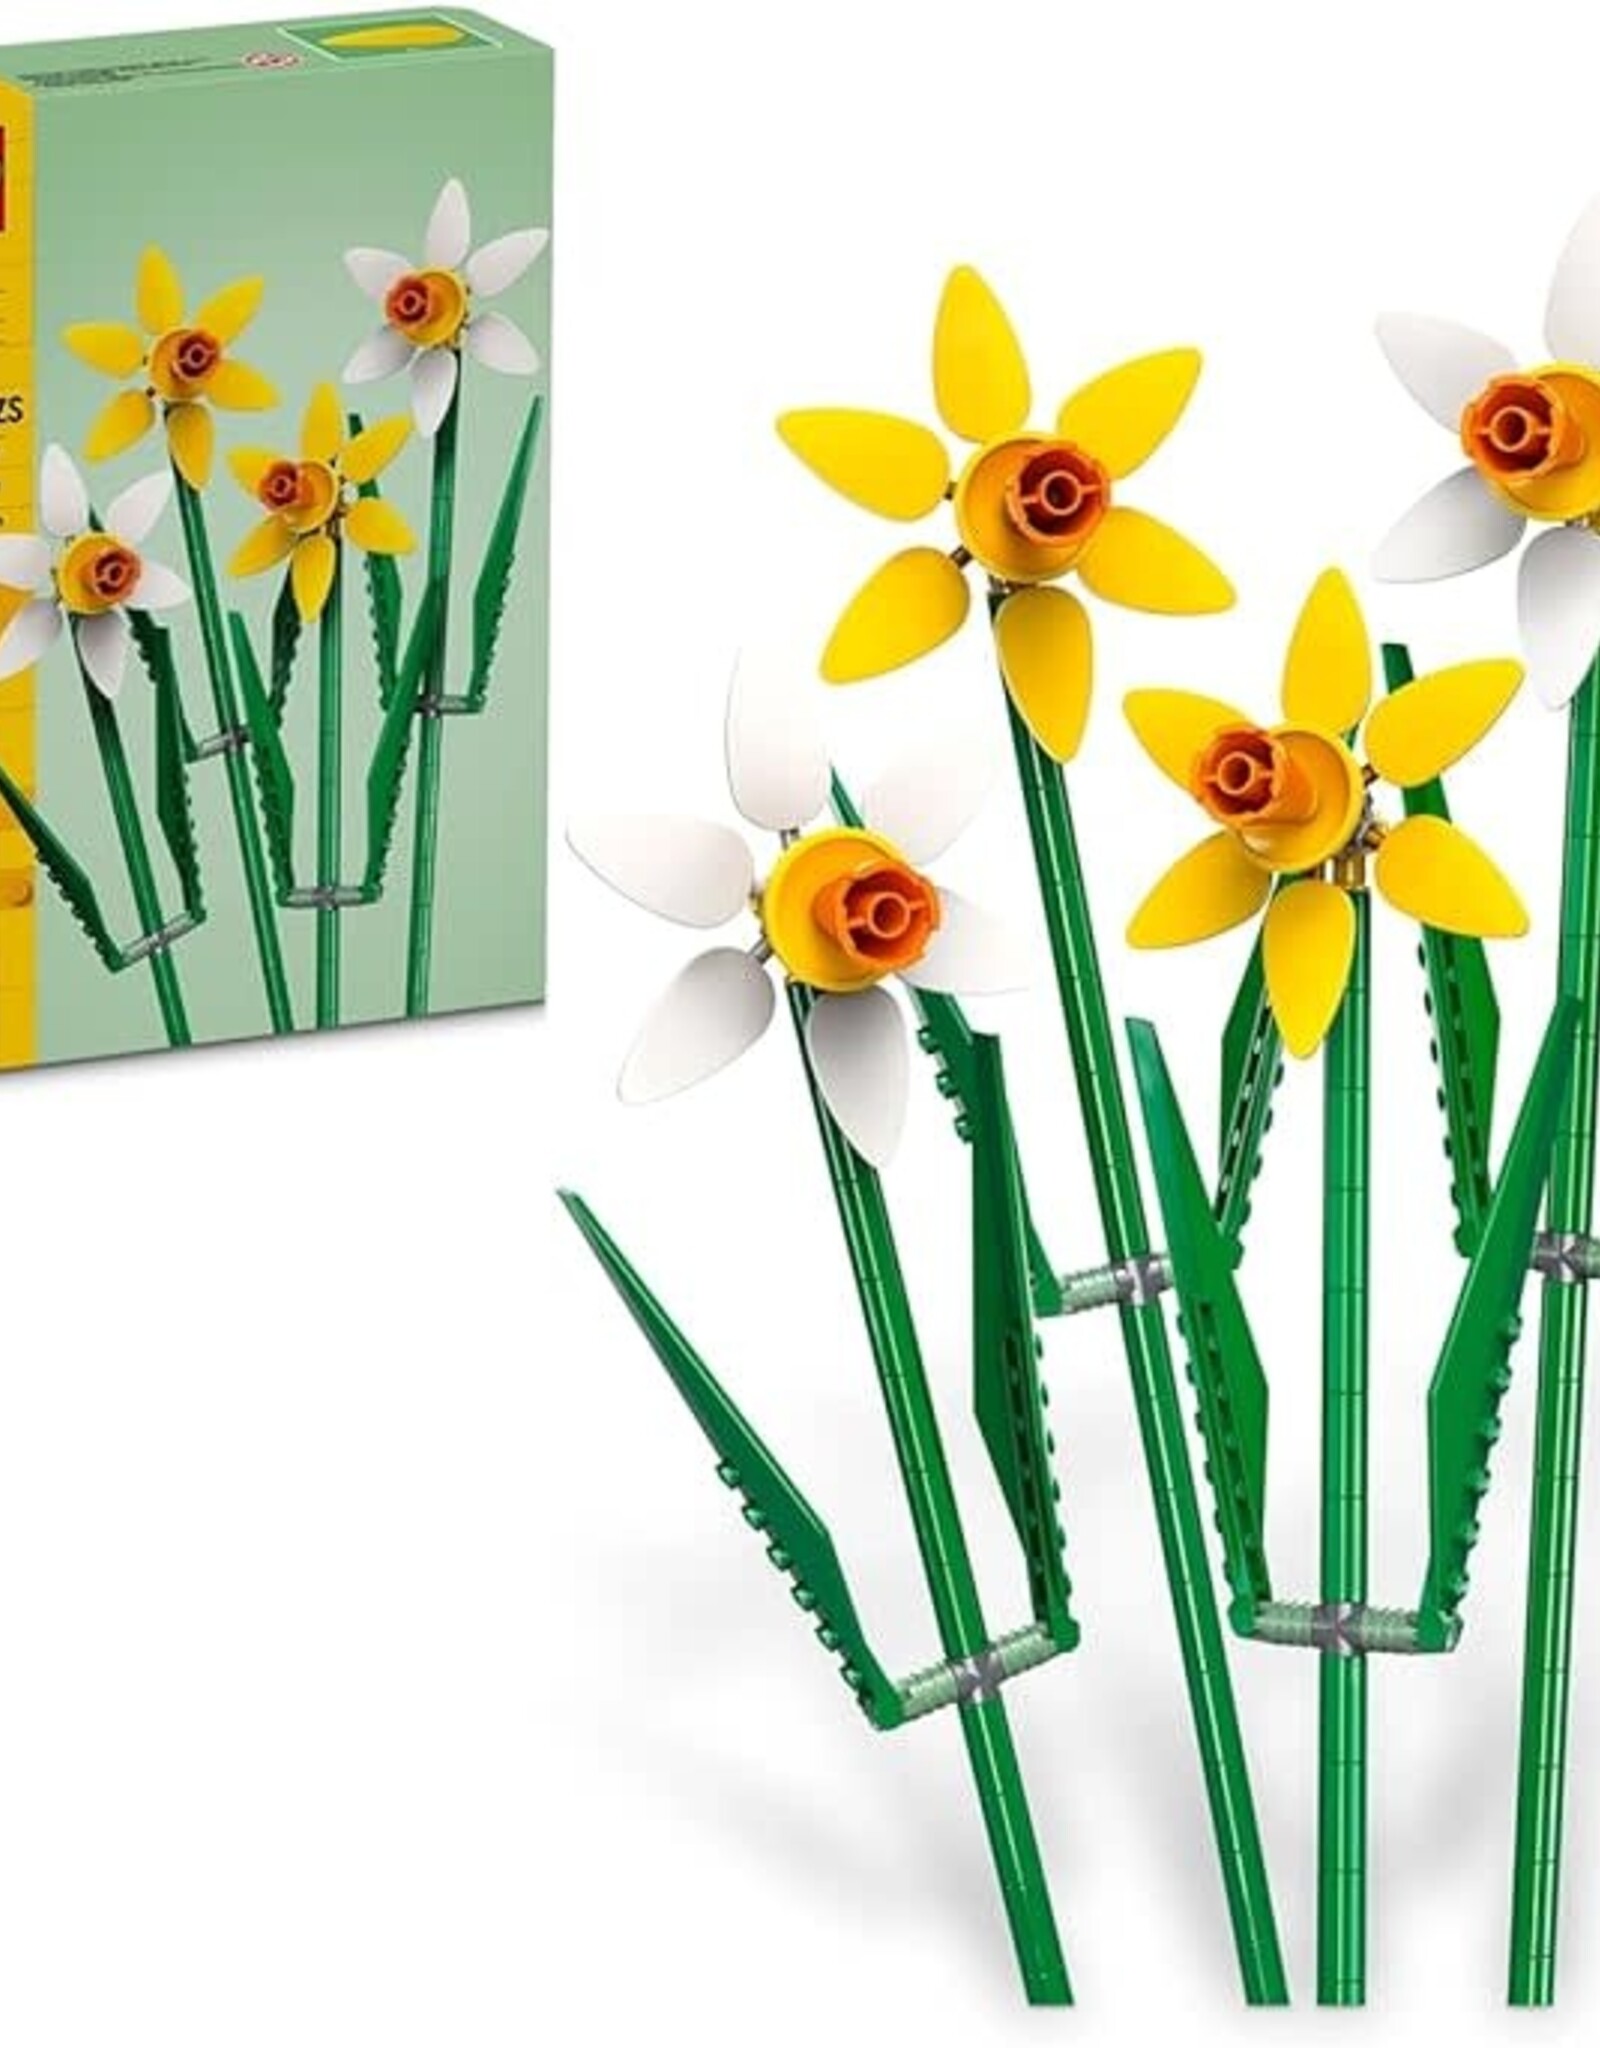 LEGO LEGO Daffodils